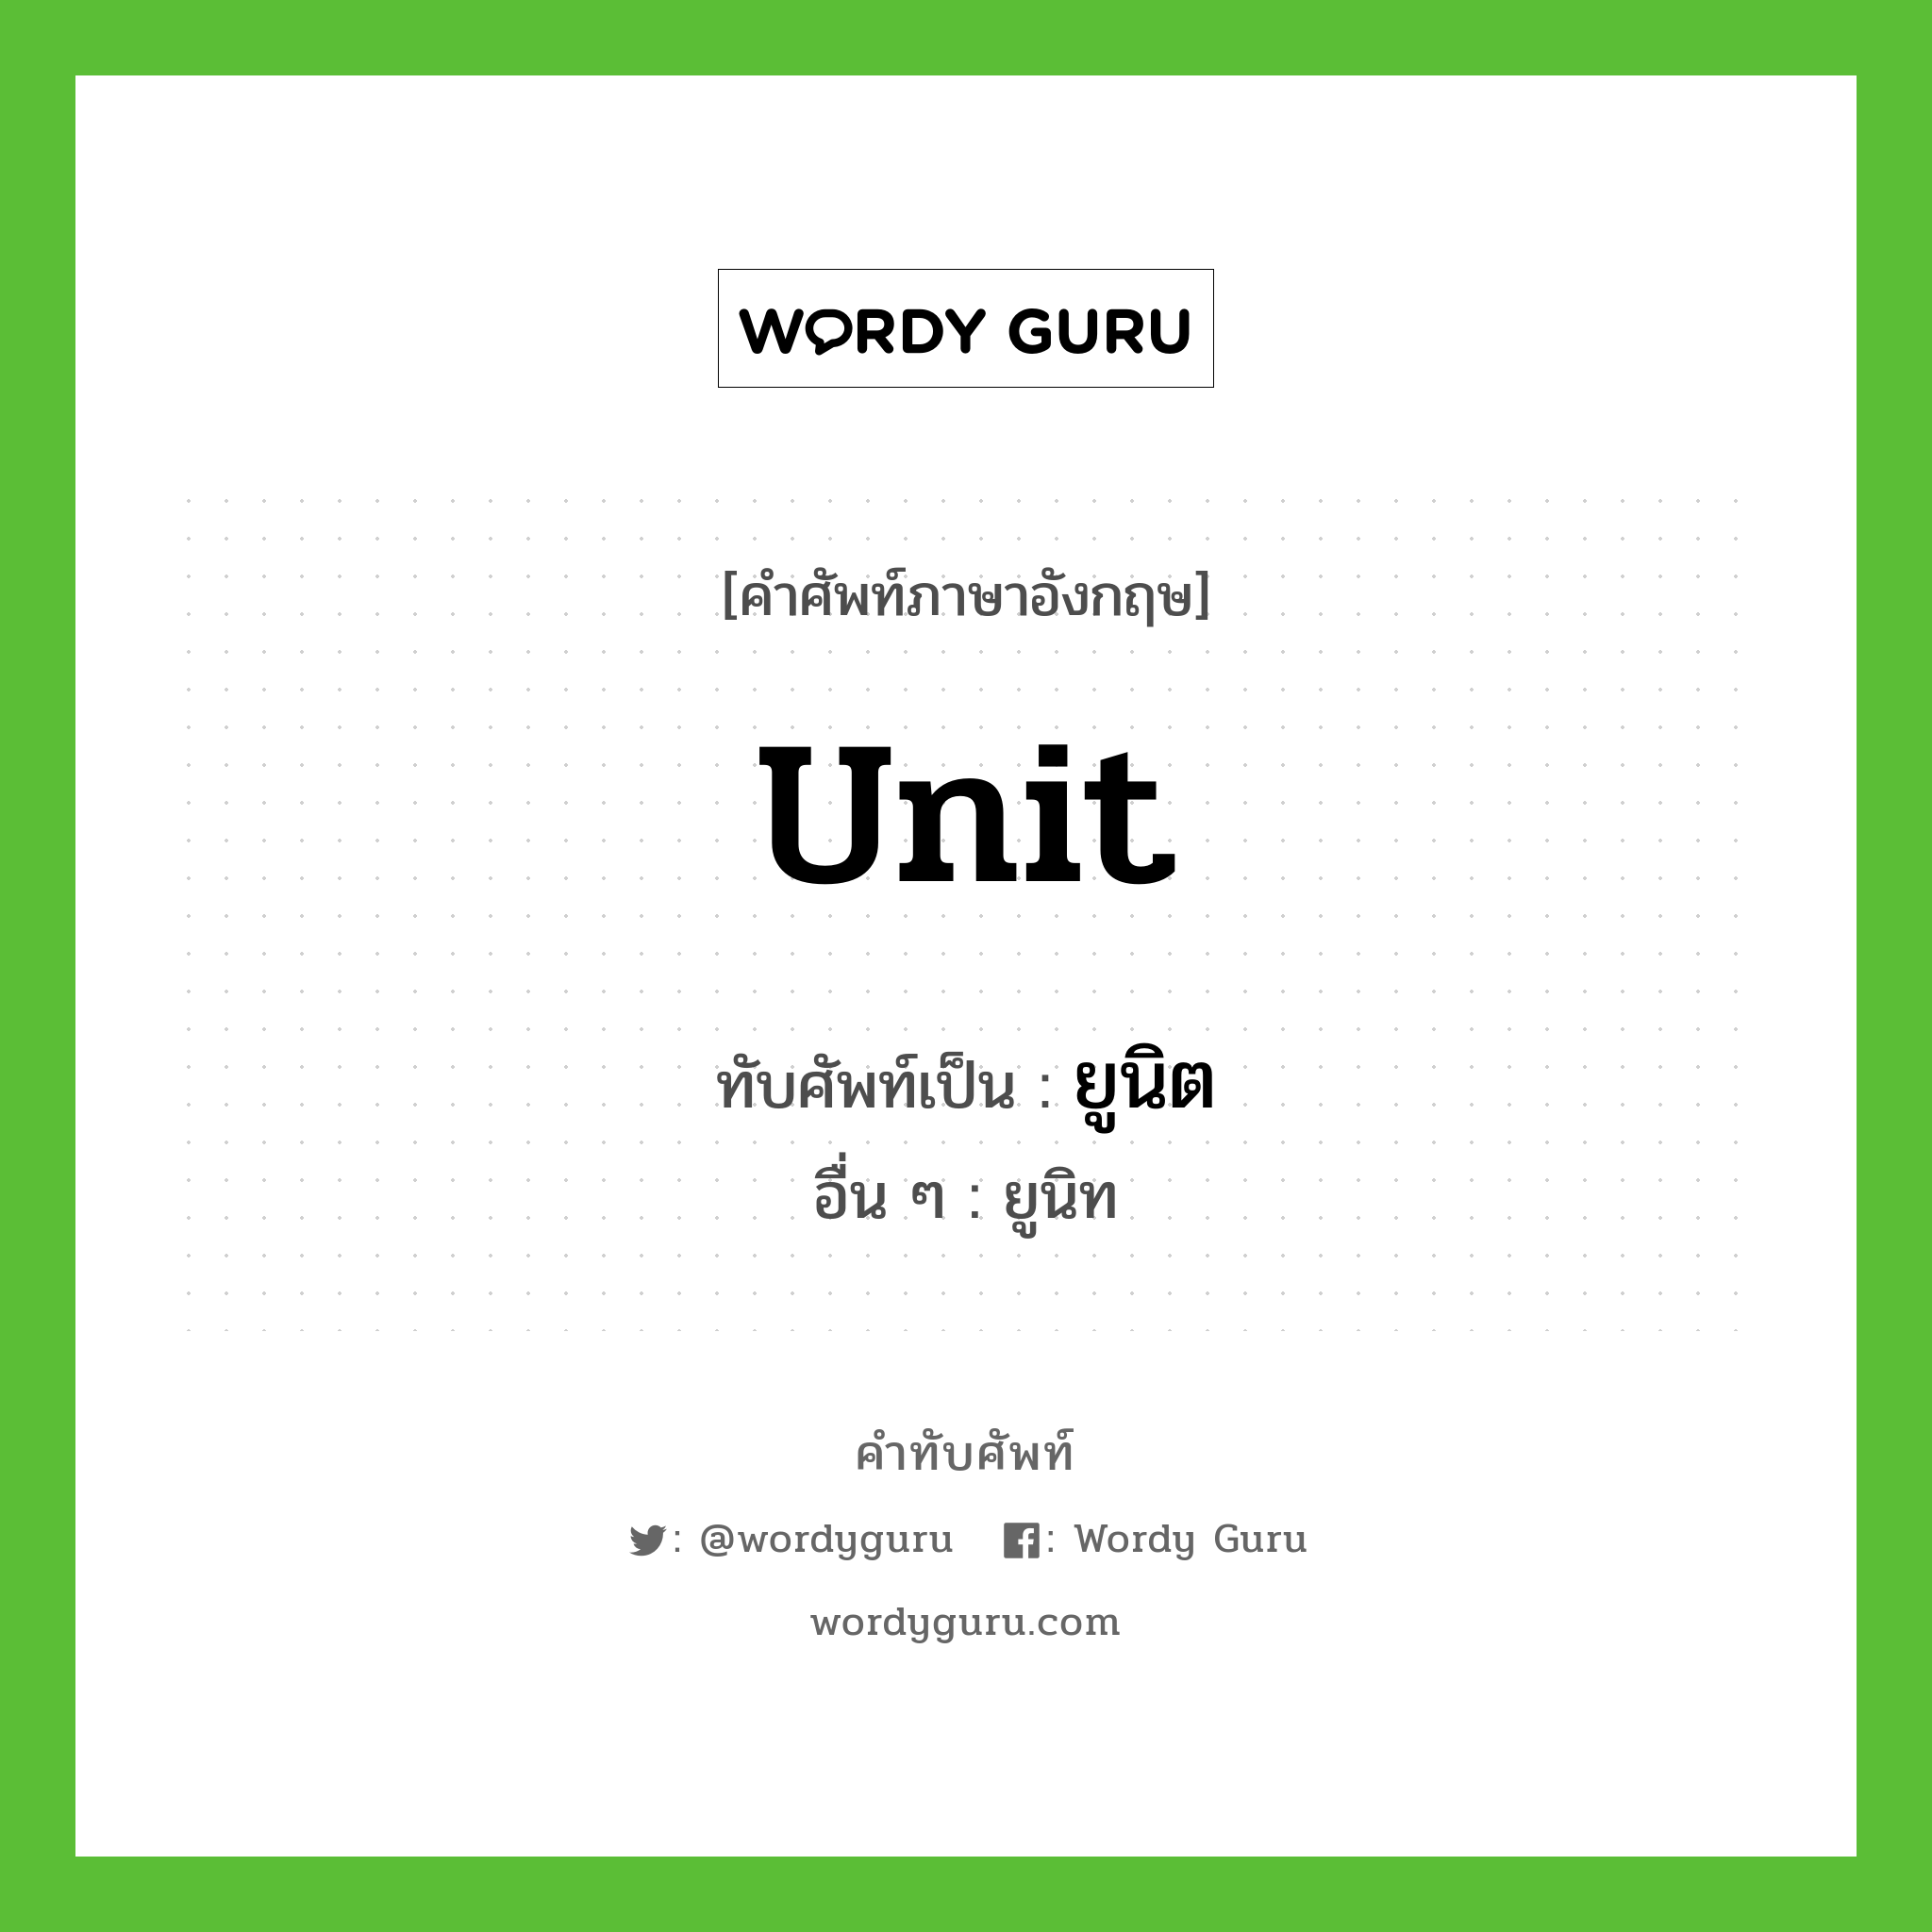 unit เขียนเป็นคำไทยว่าอะไร?, คำศัพท์ภาษาอังกฤษ unit ทับศัพท์เป็น ยูนิต อื่น ๆ ยูนิท